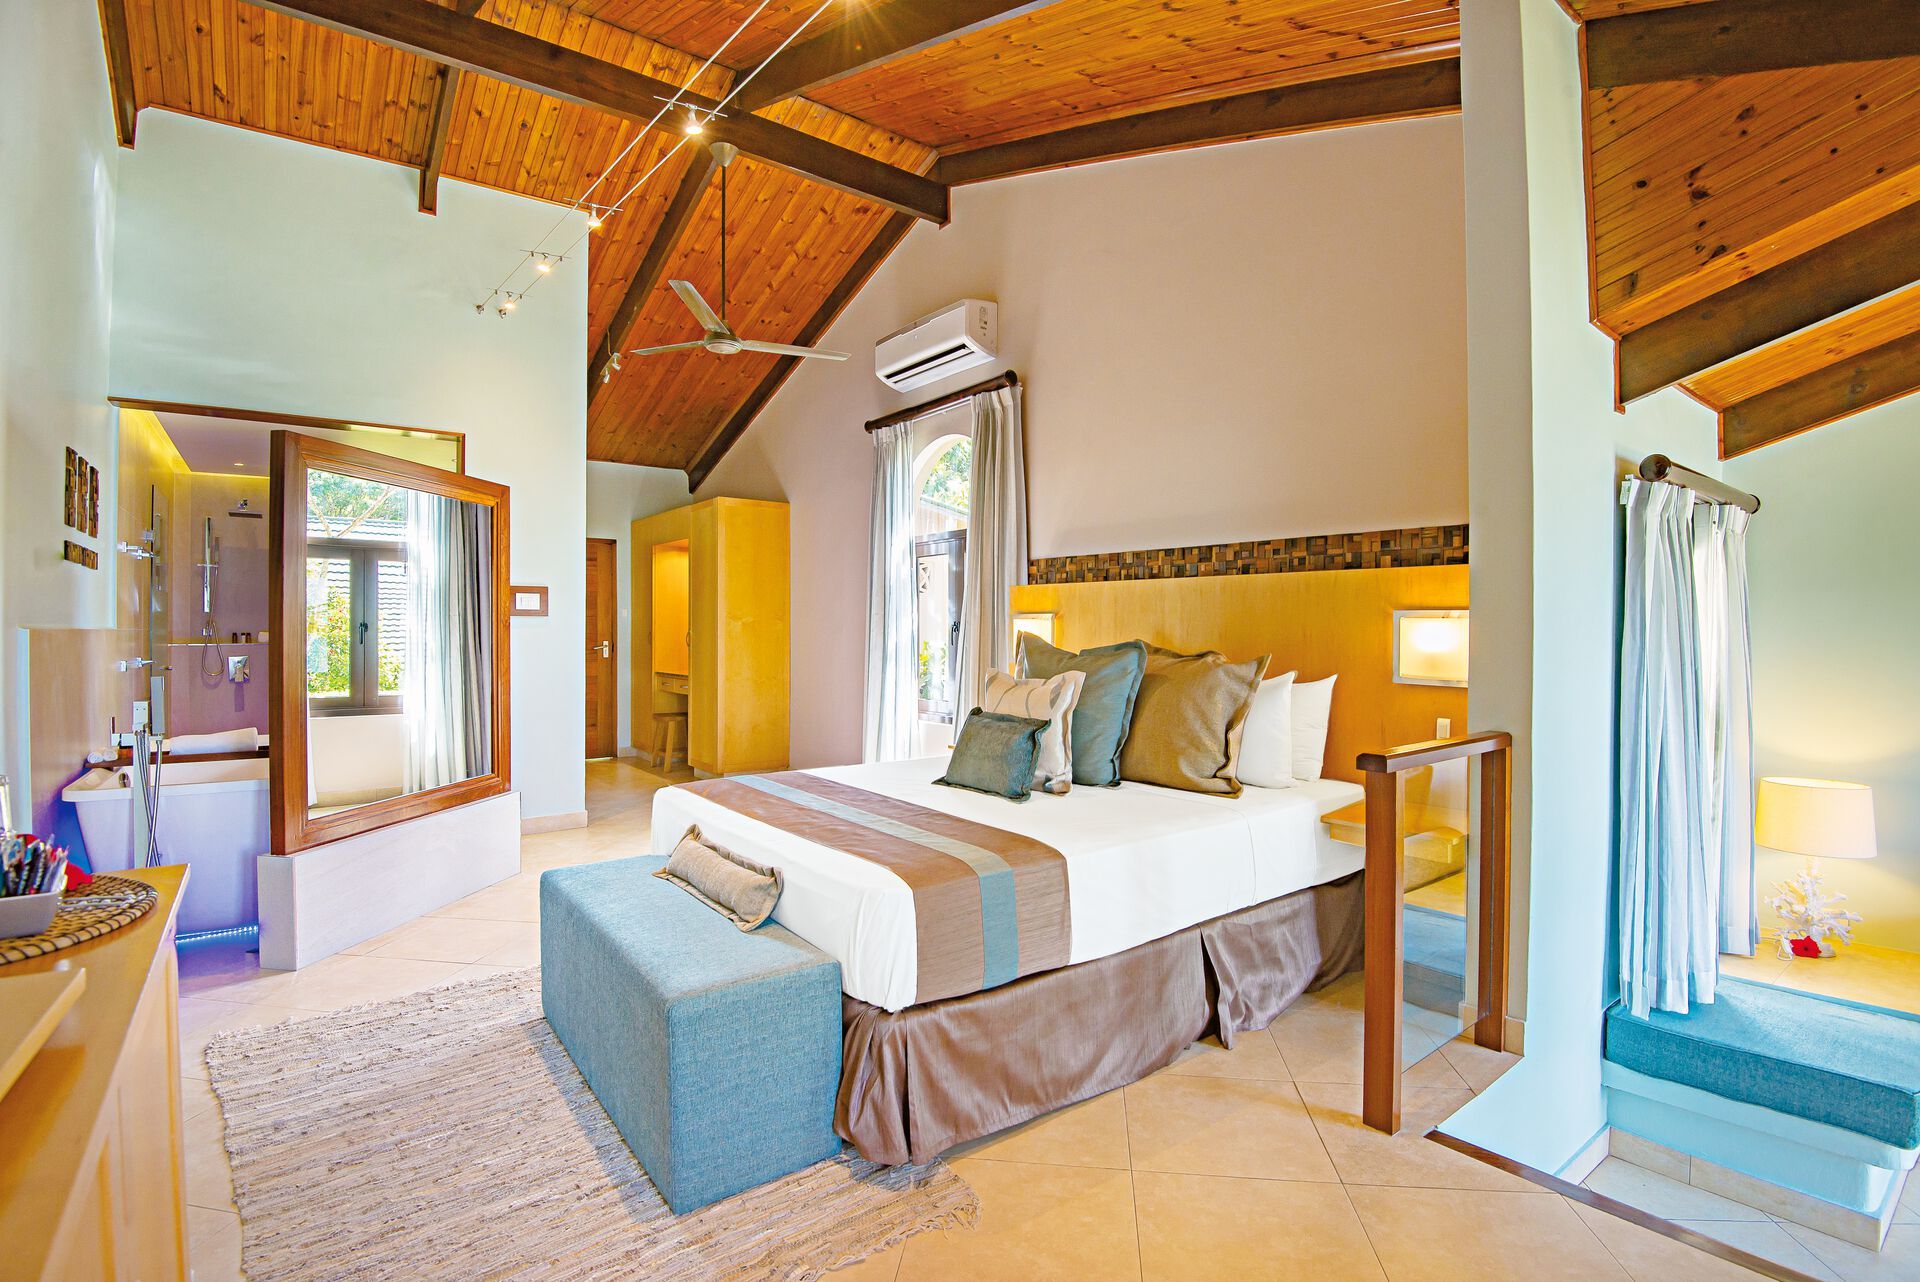 Seychelles - Hotel Coco de Mer & Black Parrot Suites 4* - Ch. double